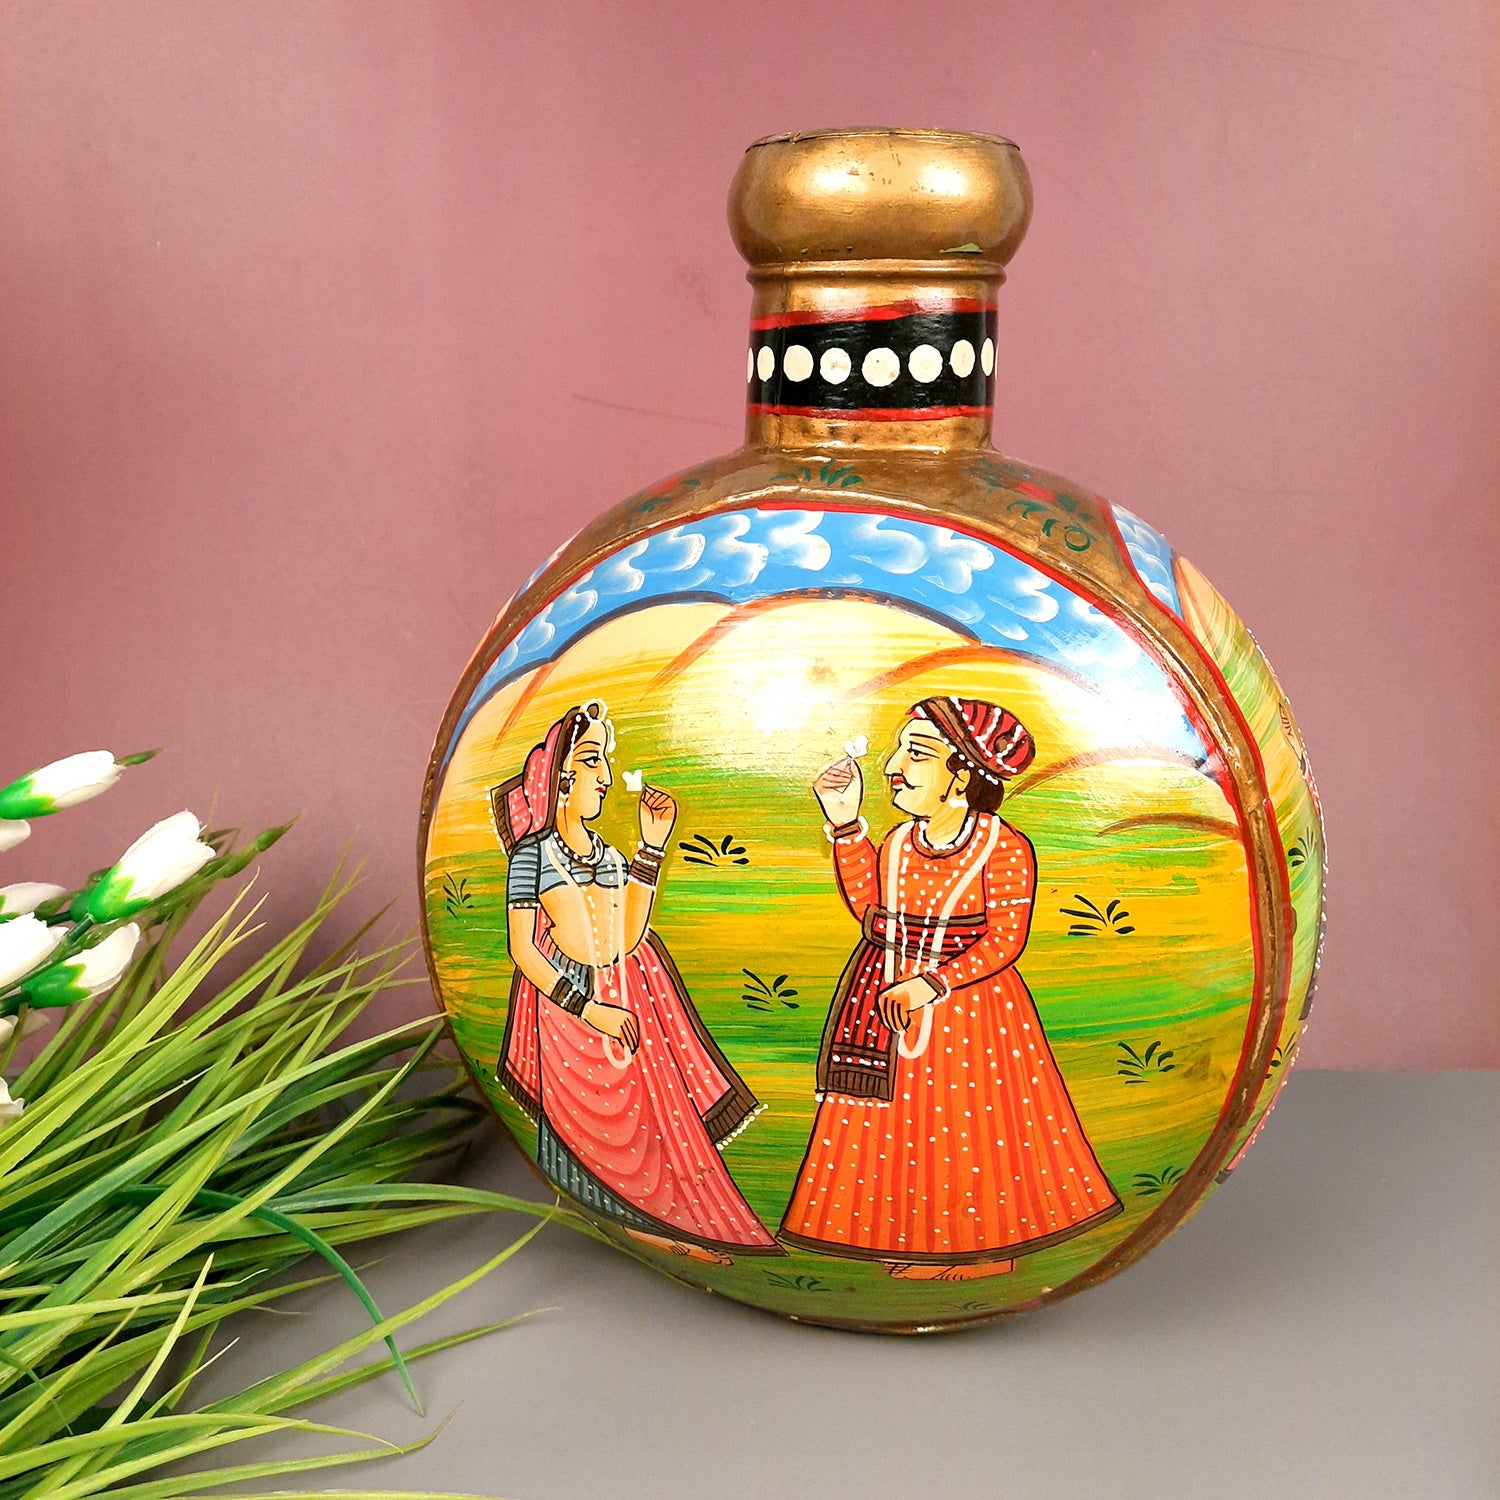 Vase Antique | Flower Pots Handcrafted - For Living room, Table, Corner & Home Decor & Gifts -15 Inch - Apkamart